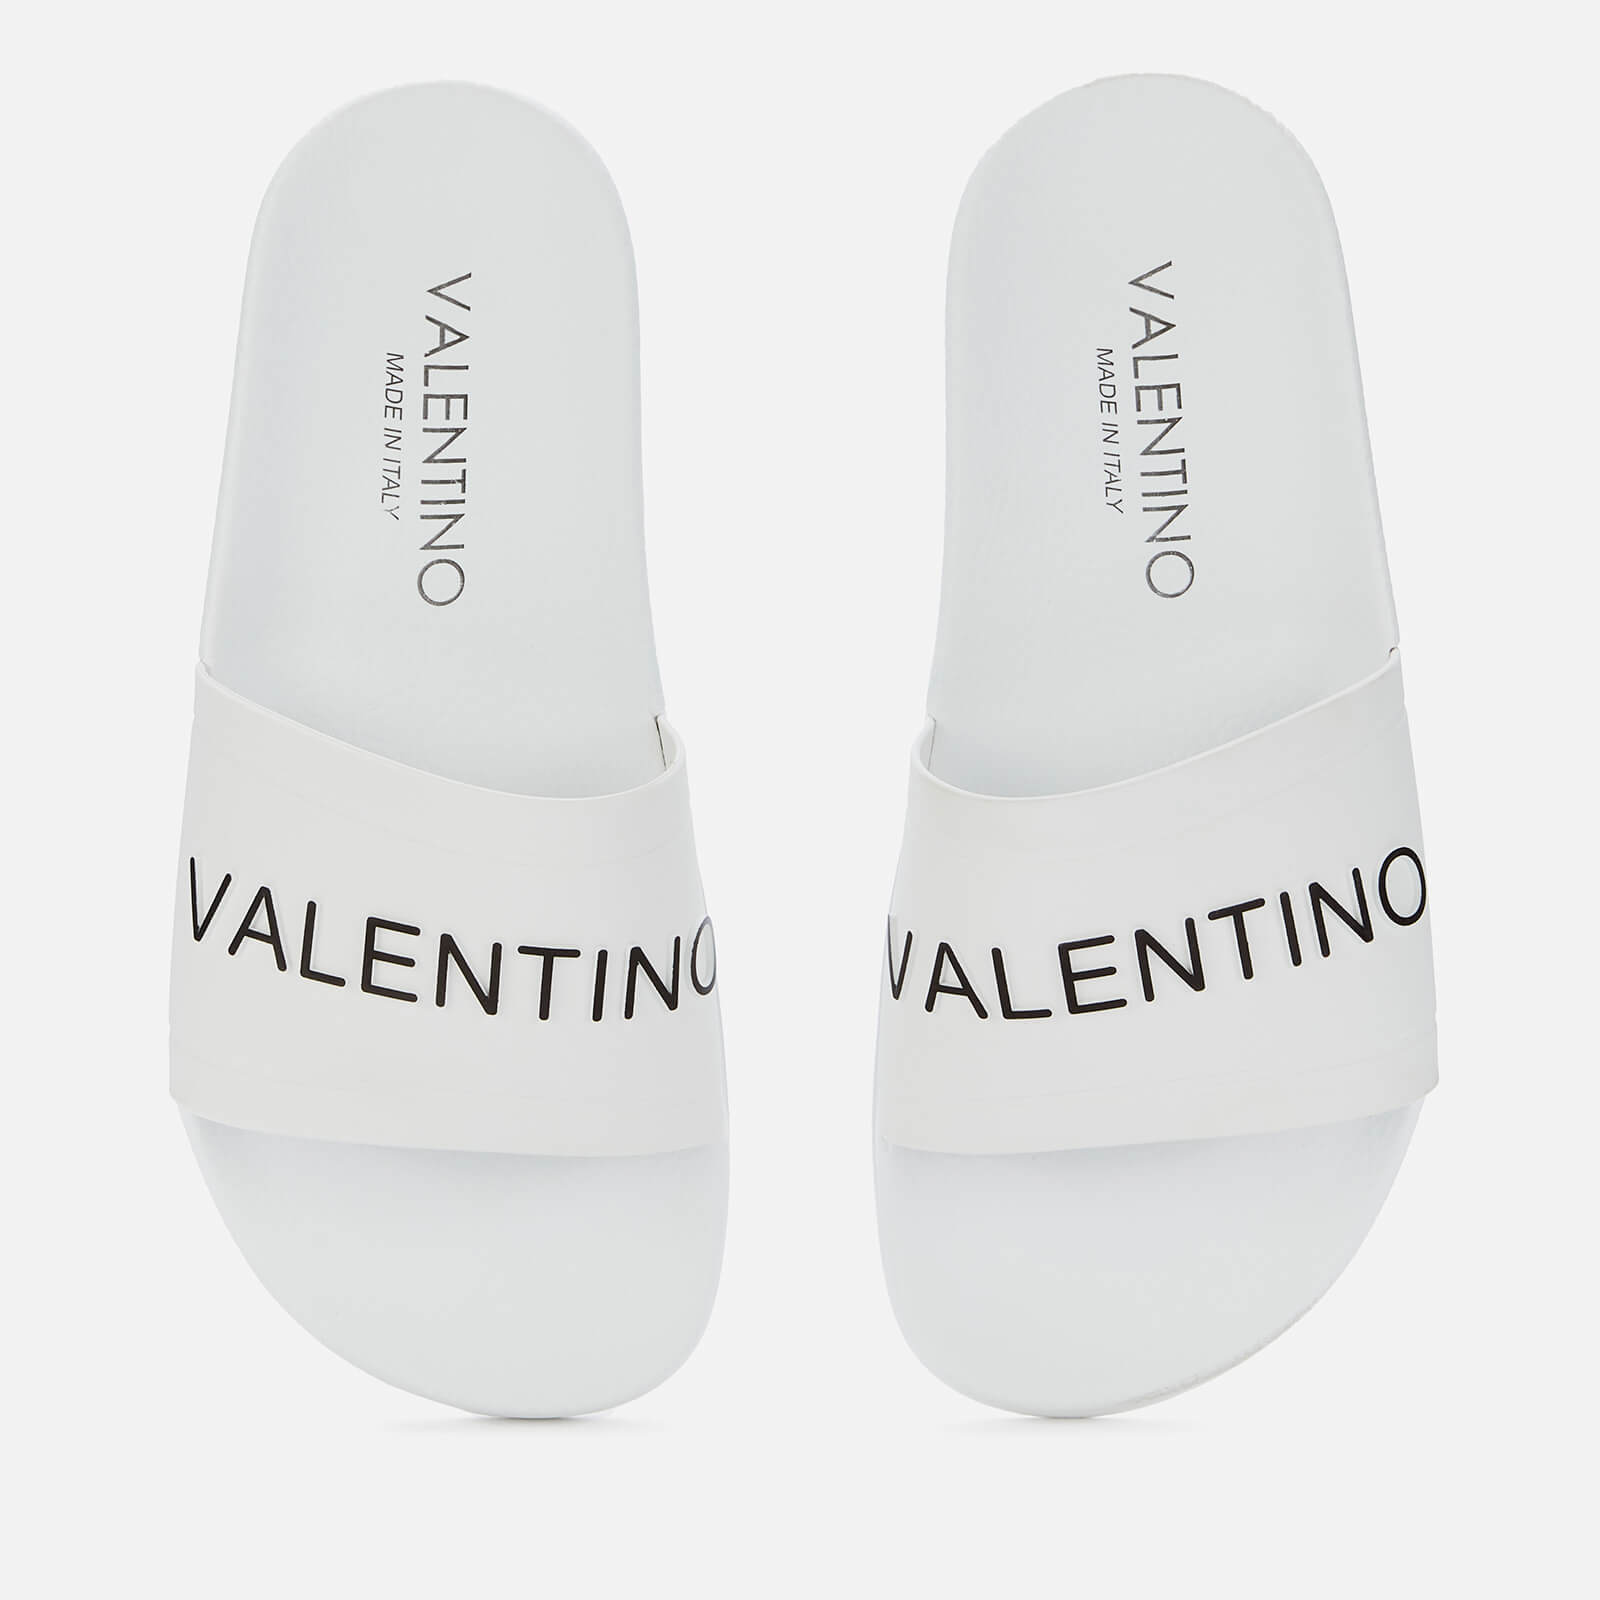 Valentino Shoes Women's Slide Sandals - White - UK 3